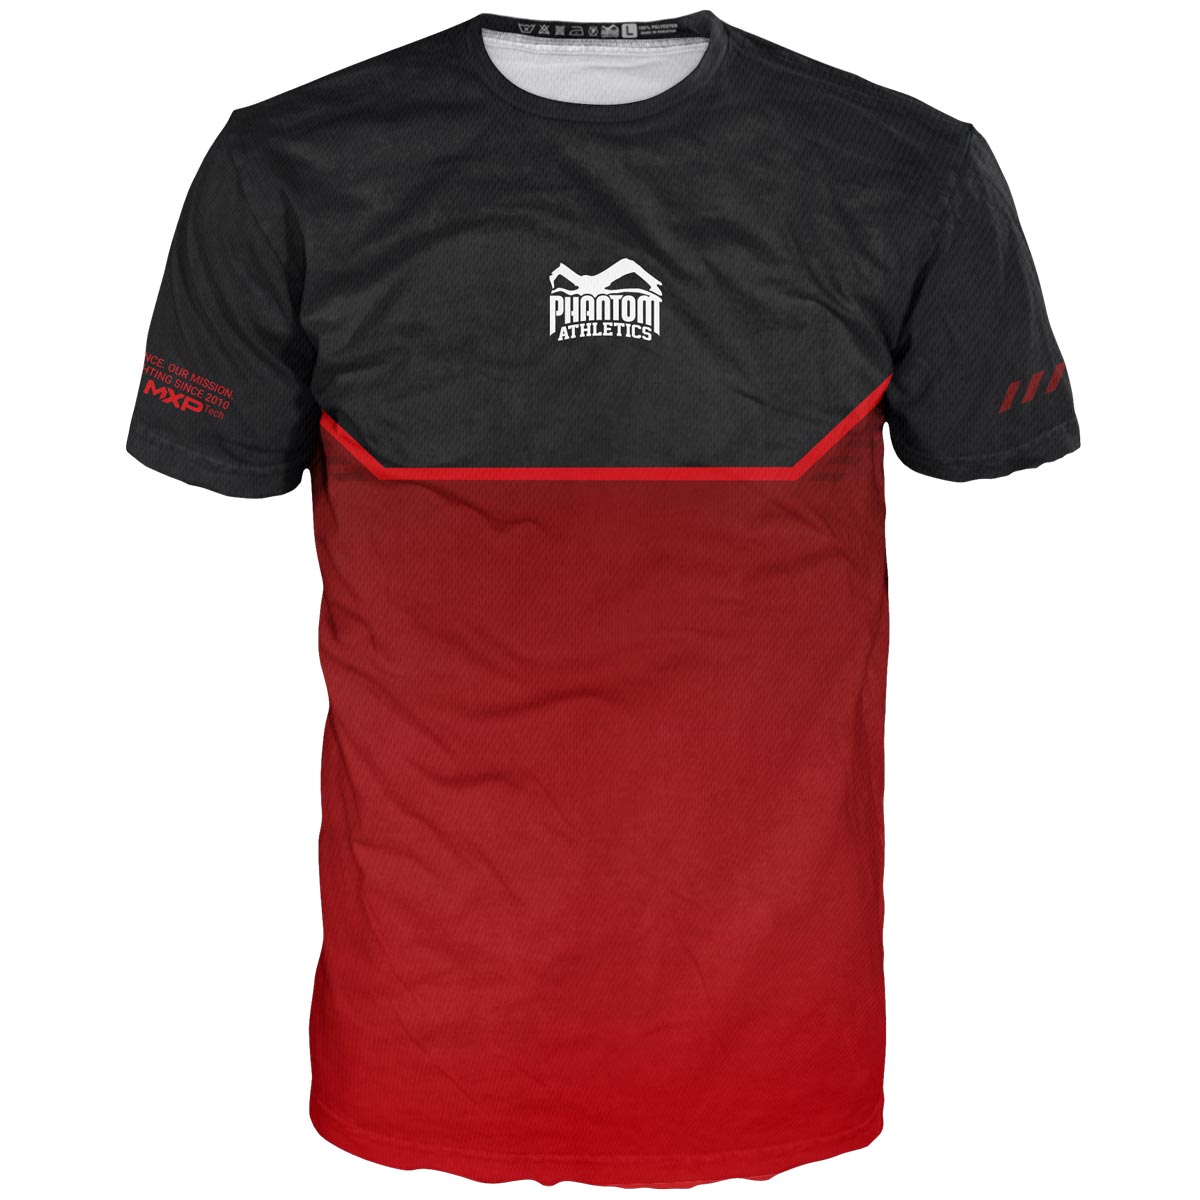 La nouvelle chemise d'arts martiaux Phantom EVO pour votre entraînement. Ultra confortable à porter et résistant à la transpiration. Maintenant dans l'édition RED limitée.